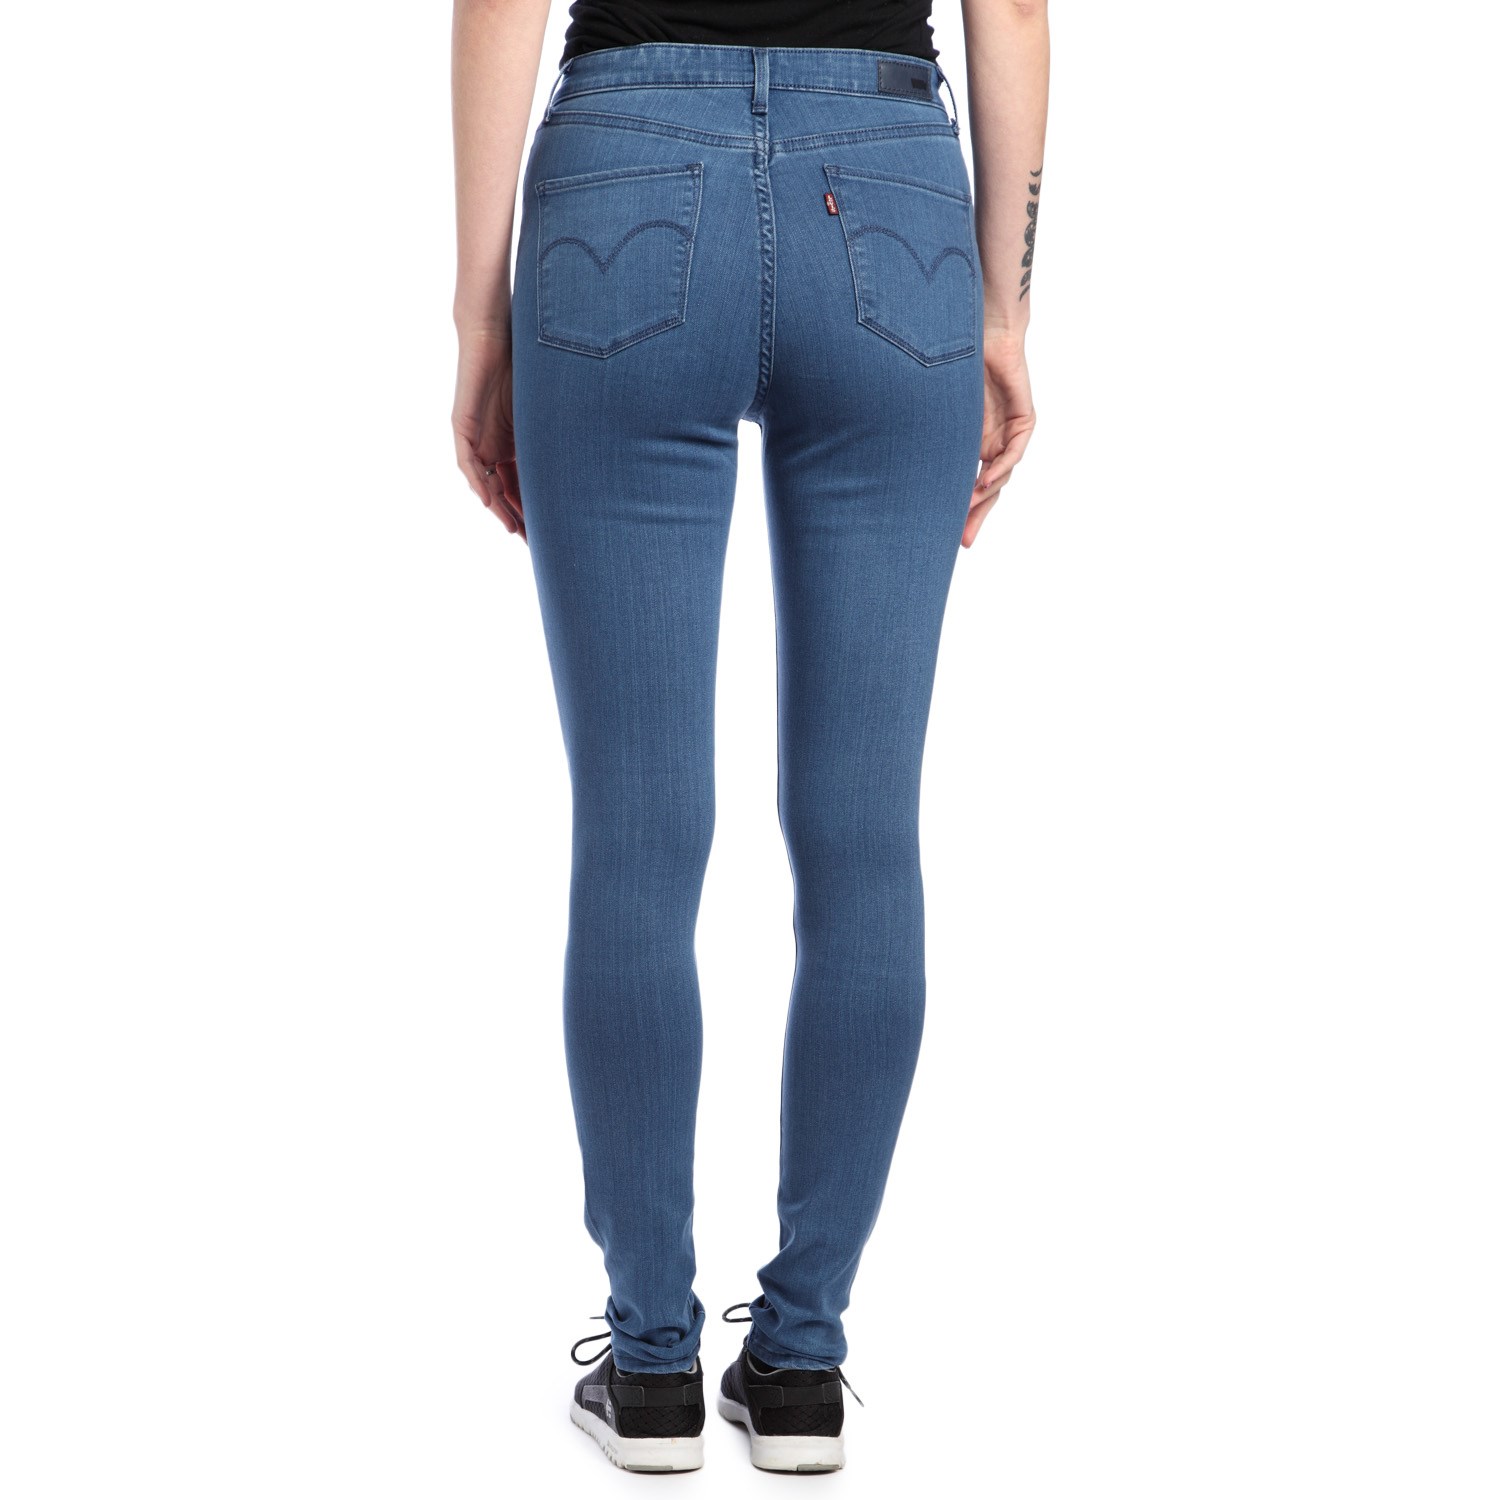 women's levi's legging jeans